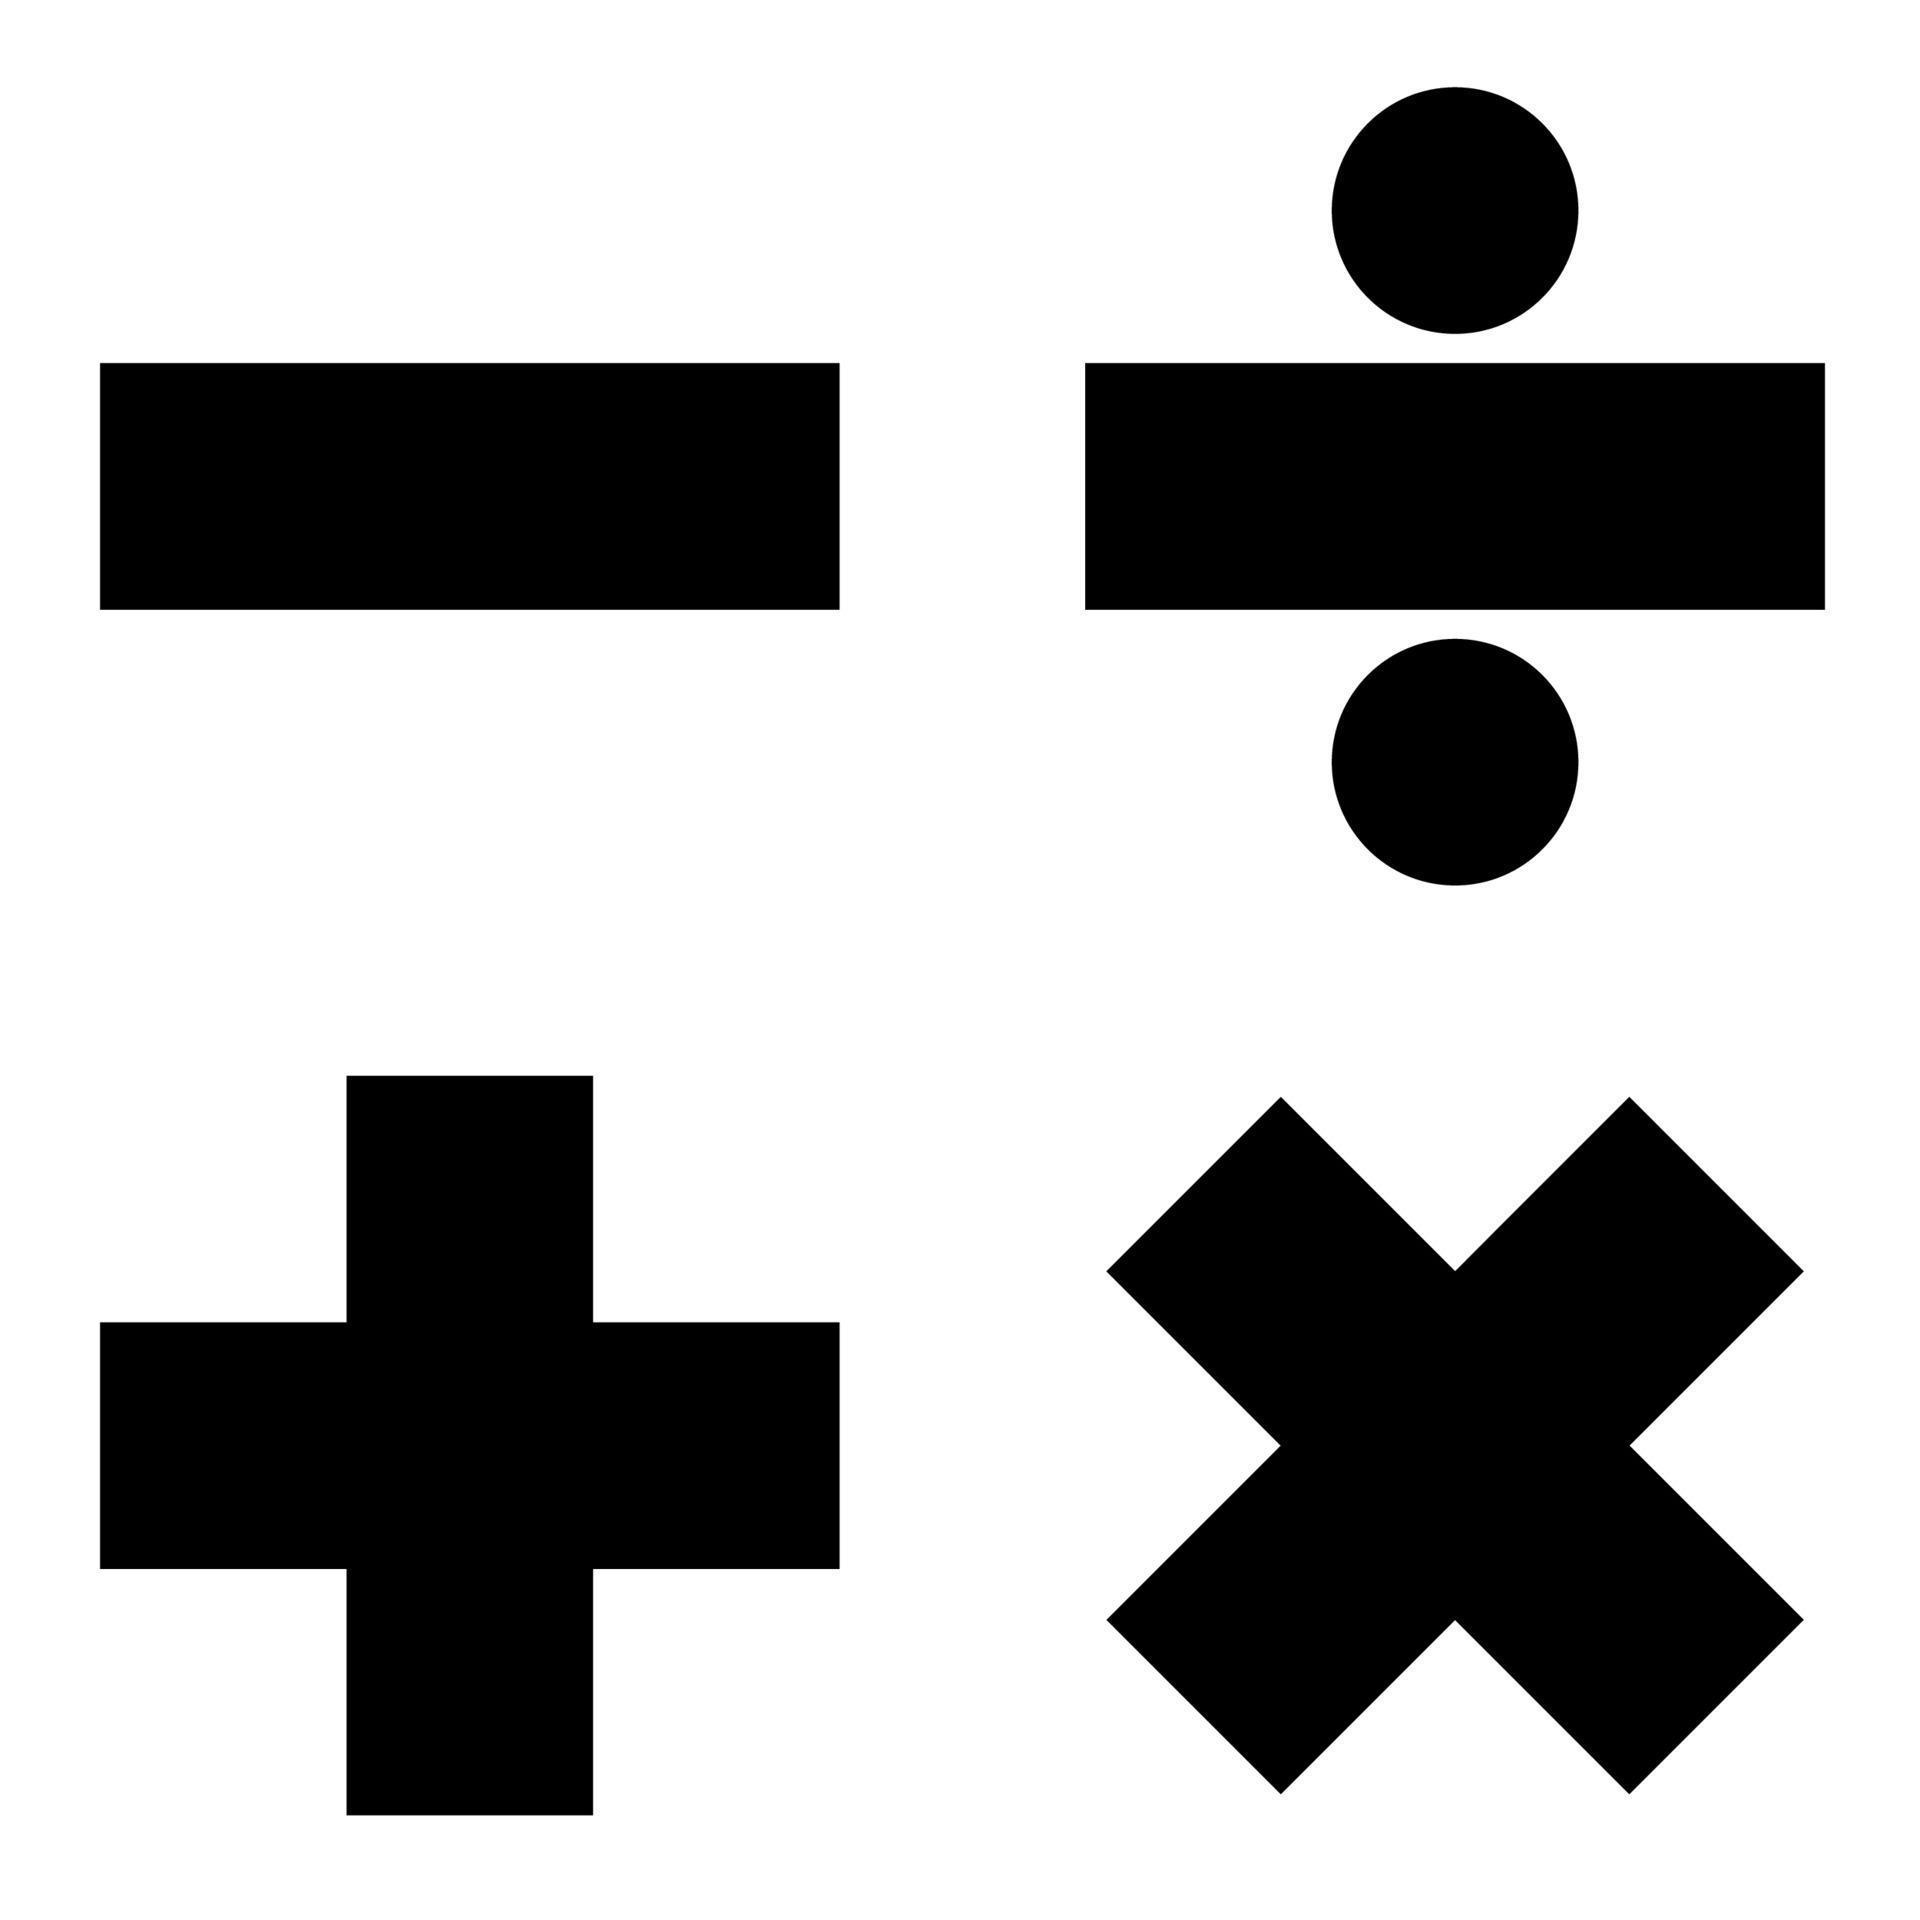 wiskunde tekens pictogram zwarte kleur illustratie vlakke stijl eenvoudige afbeelding vector